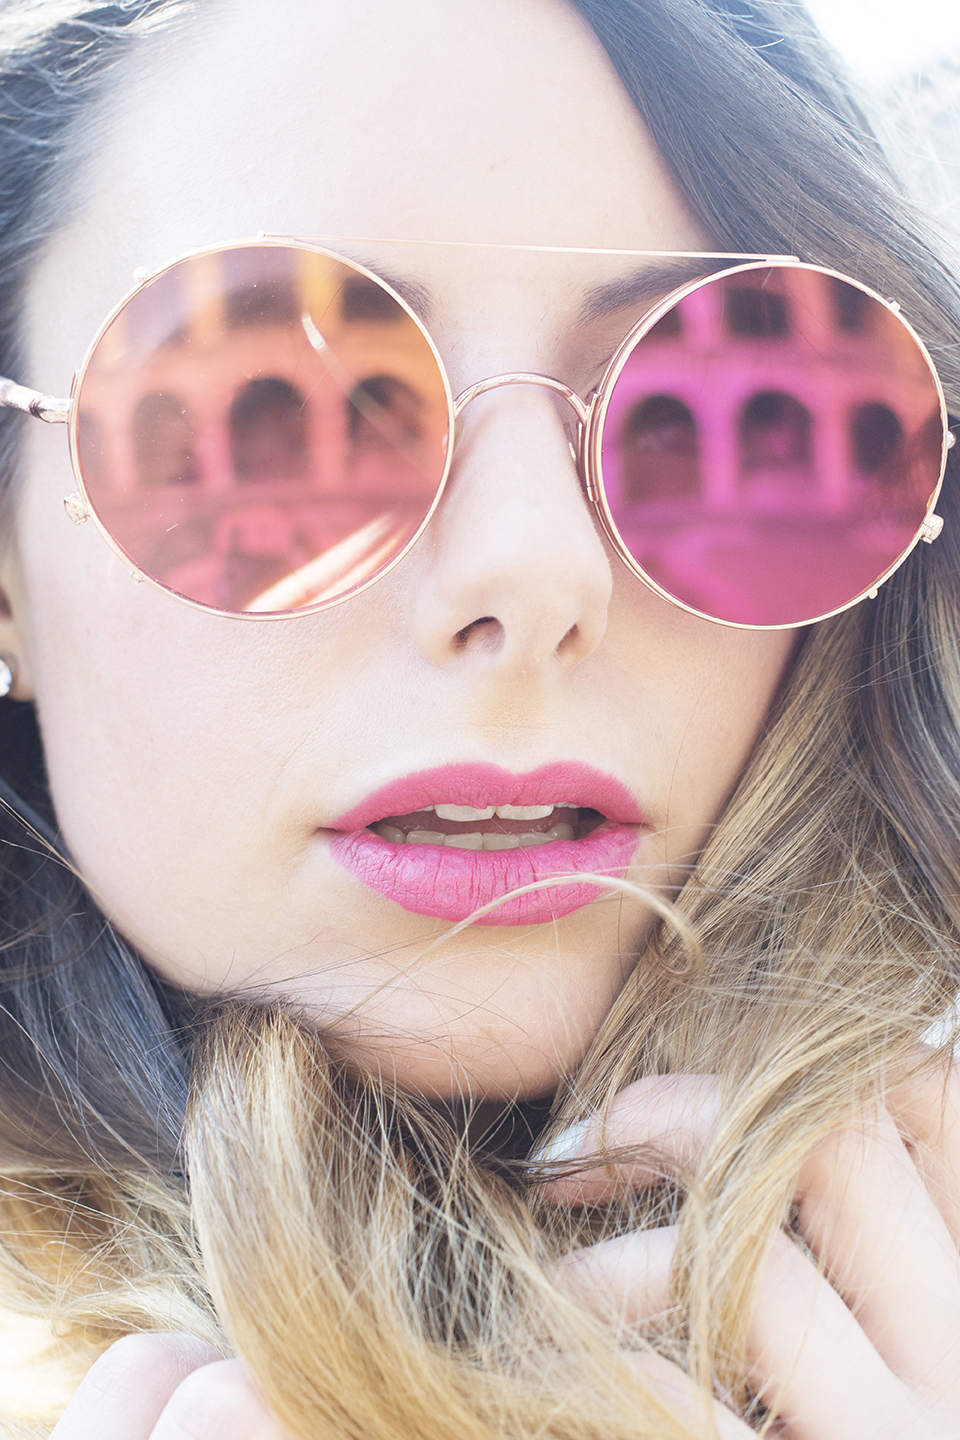 giulia-de-martin-behindmyglasses-com-blog-sunday-somewhere-sunglasses-pink-small-3